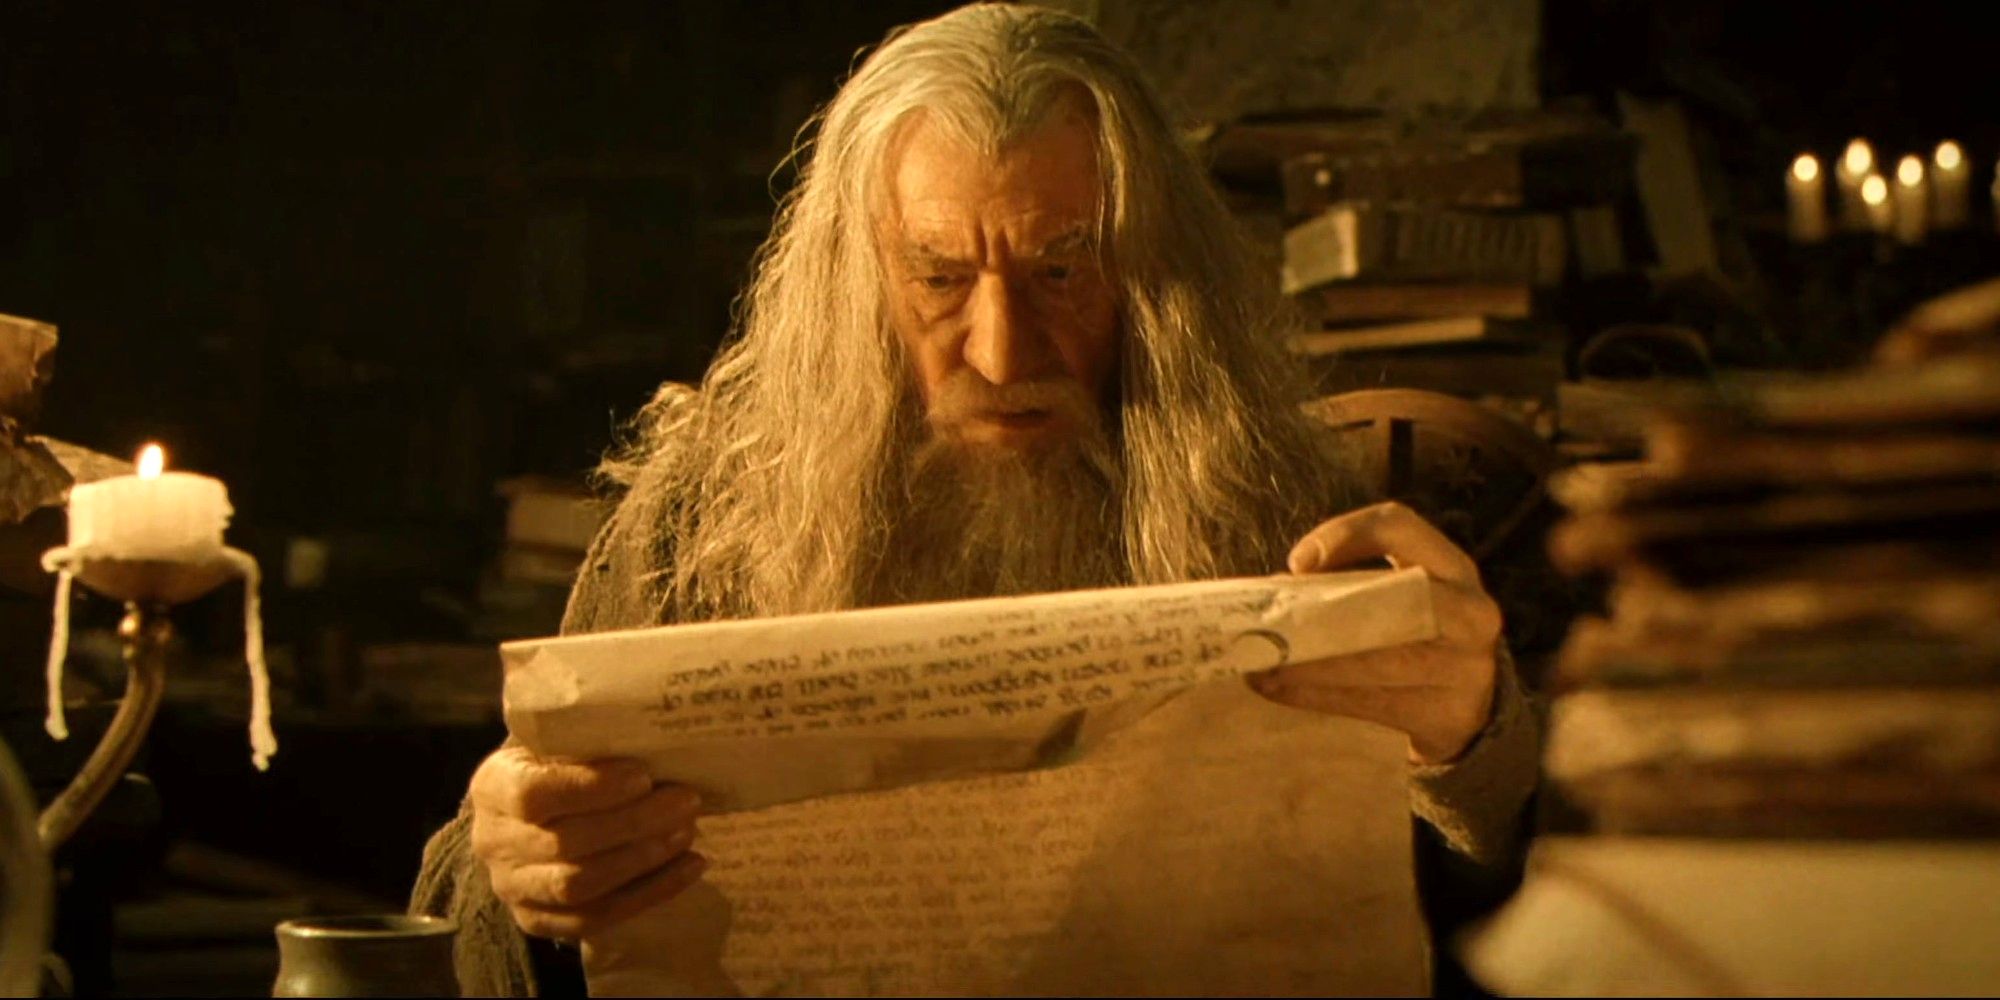 Se encuentran guiones perdidos hace mucho tiempo para la adaptación original de El señor de los anillos de Tolkien